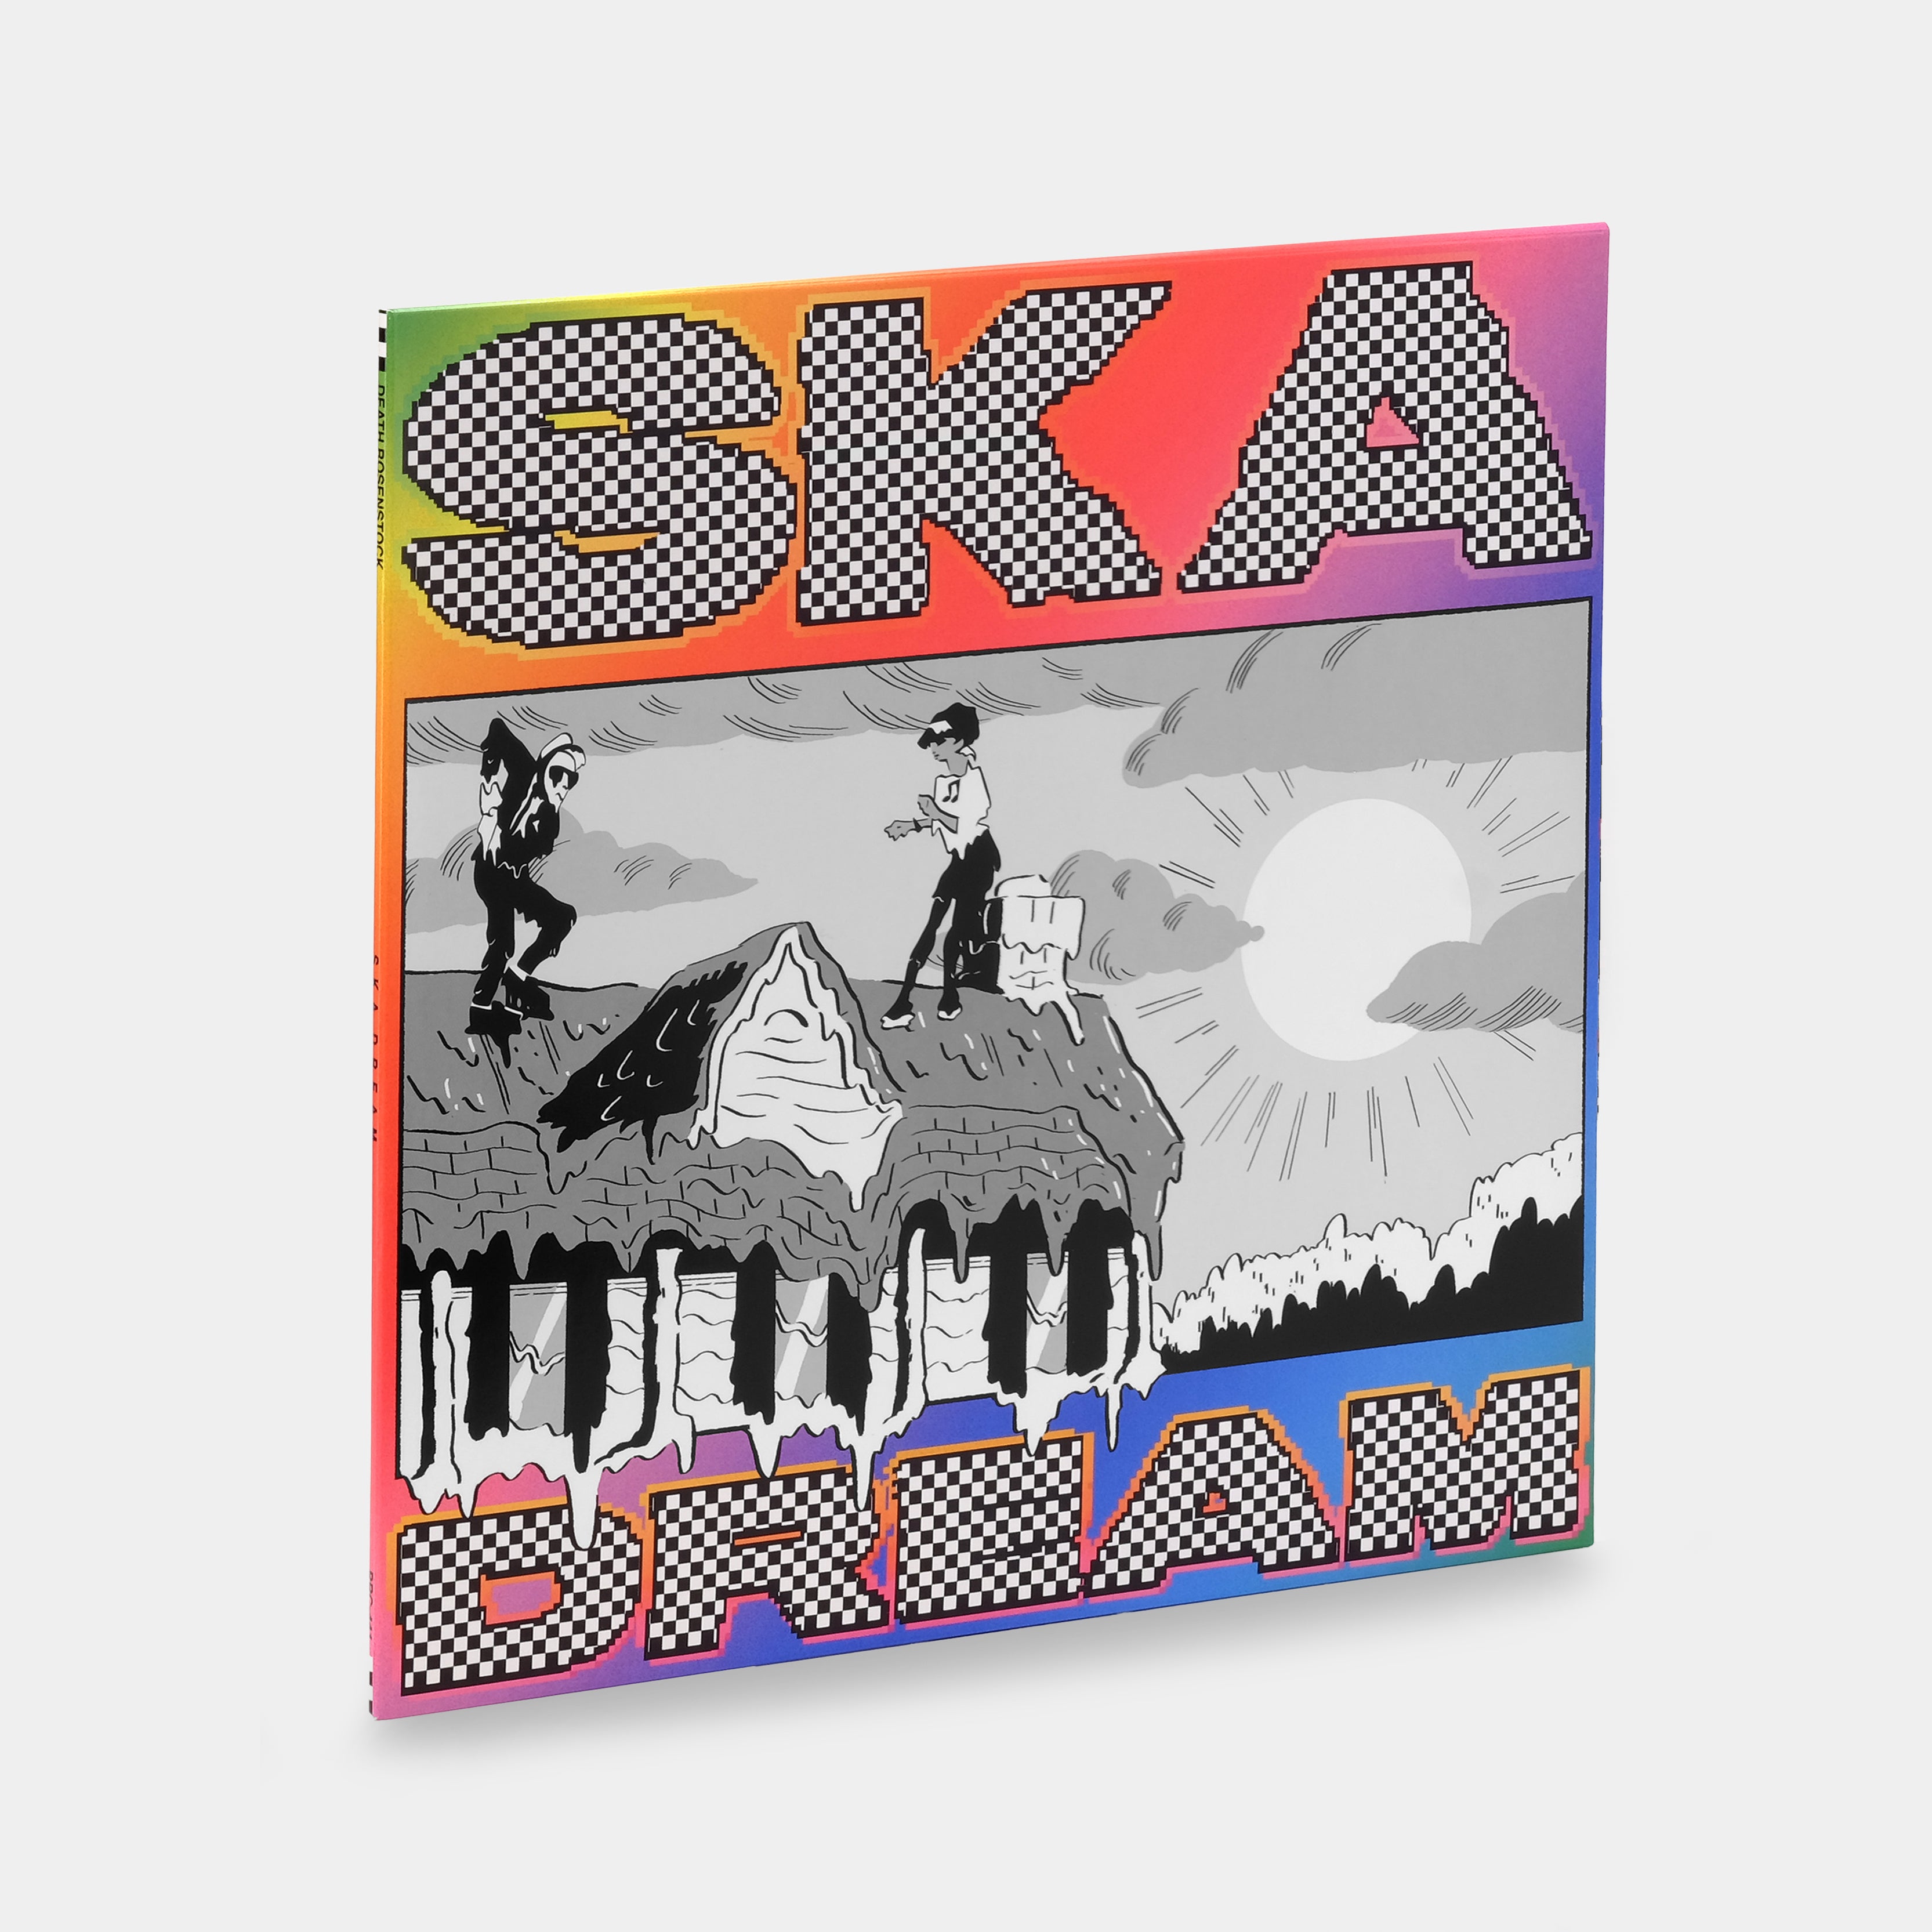 Jeff Rosenstock - SKA DREAM LP White Vinyl Record